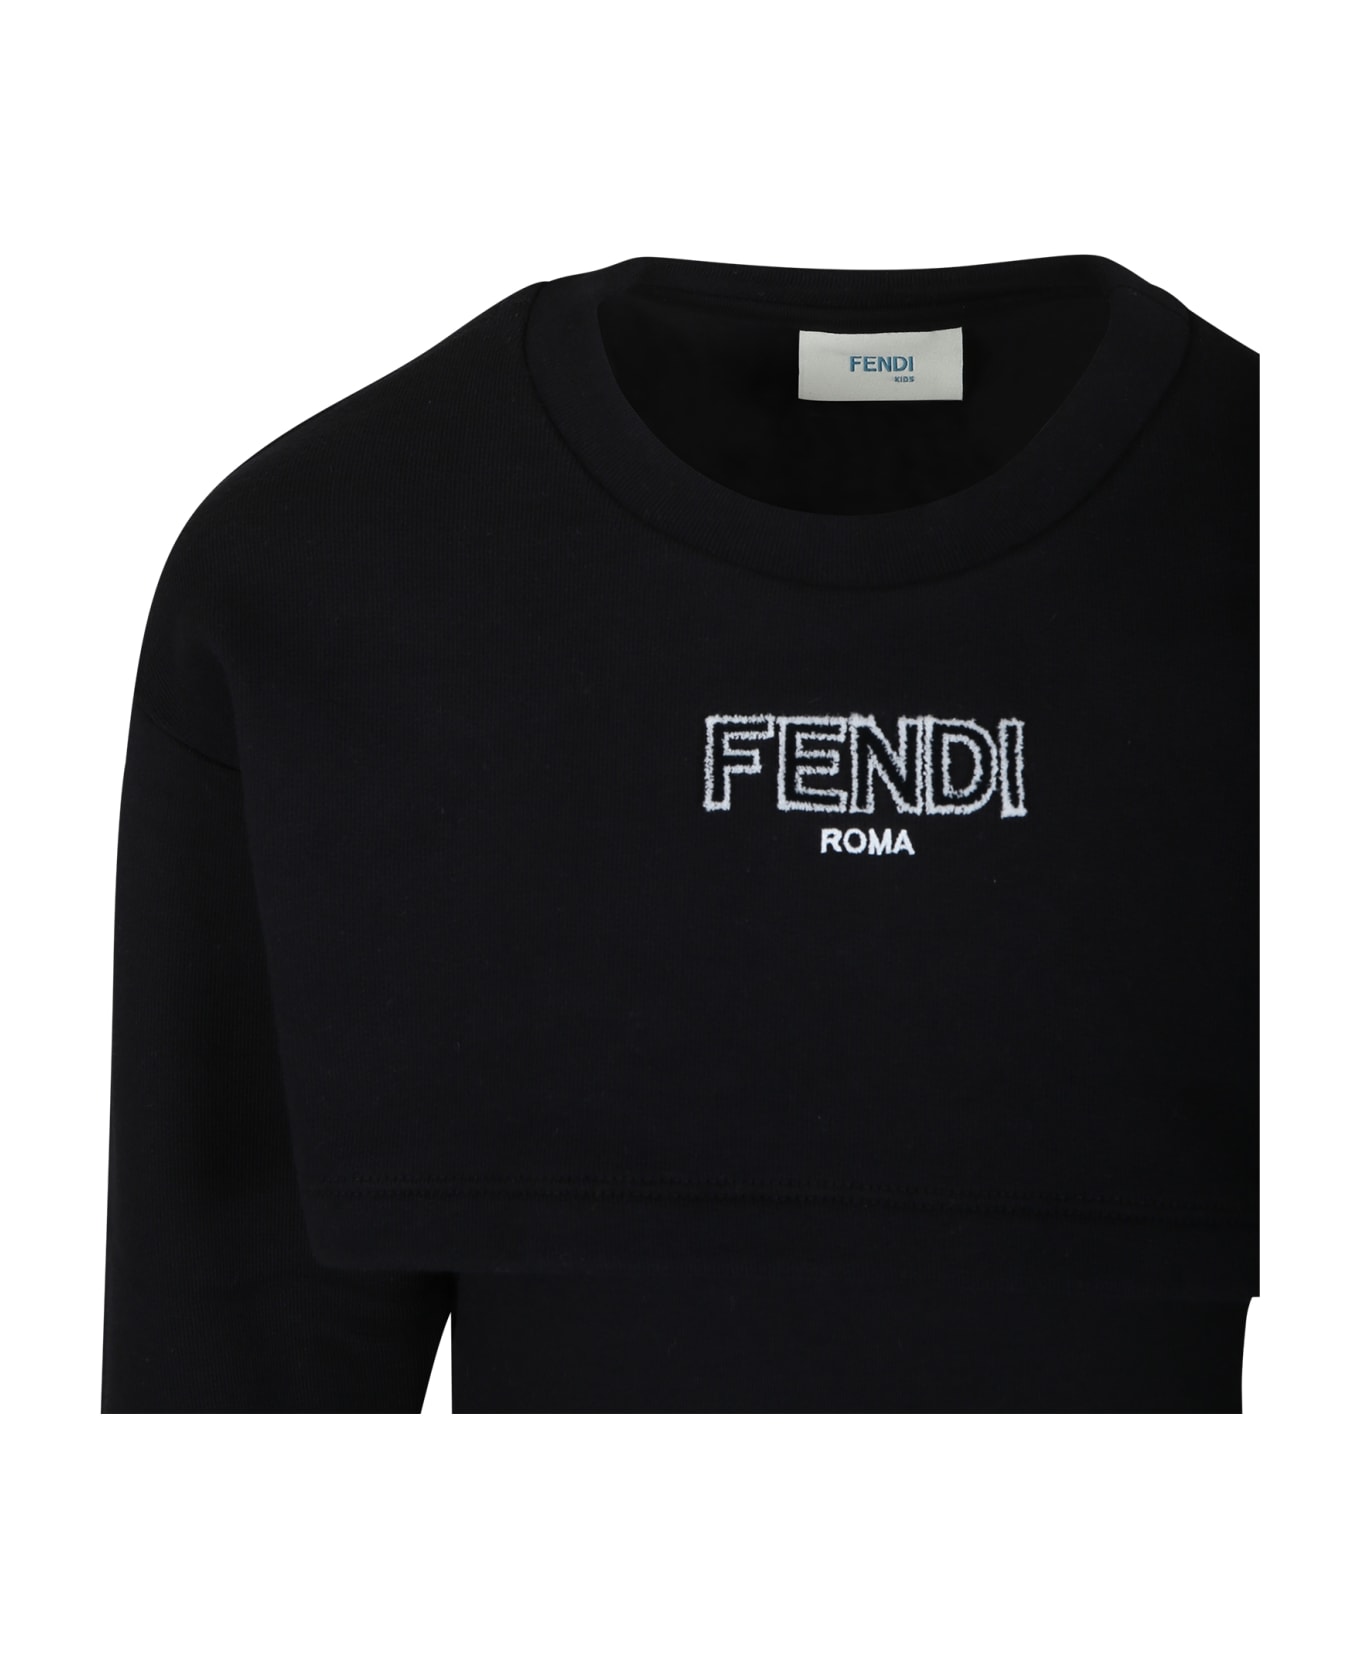 Fendi Black Dress For Girl With Fendi Logo - Black